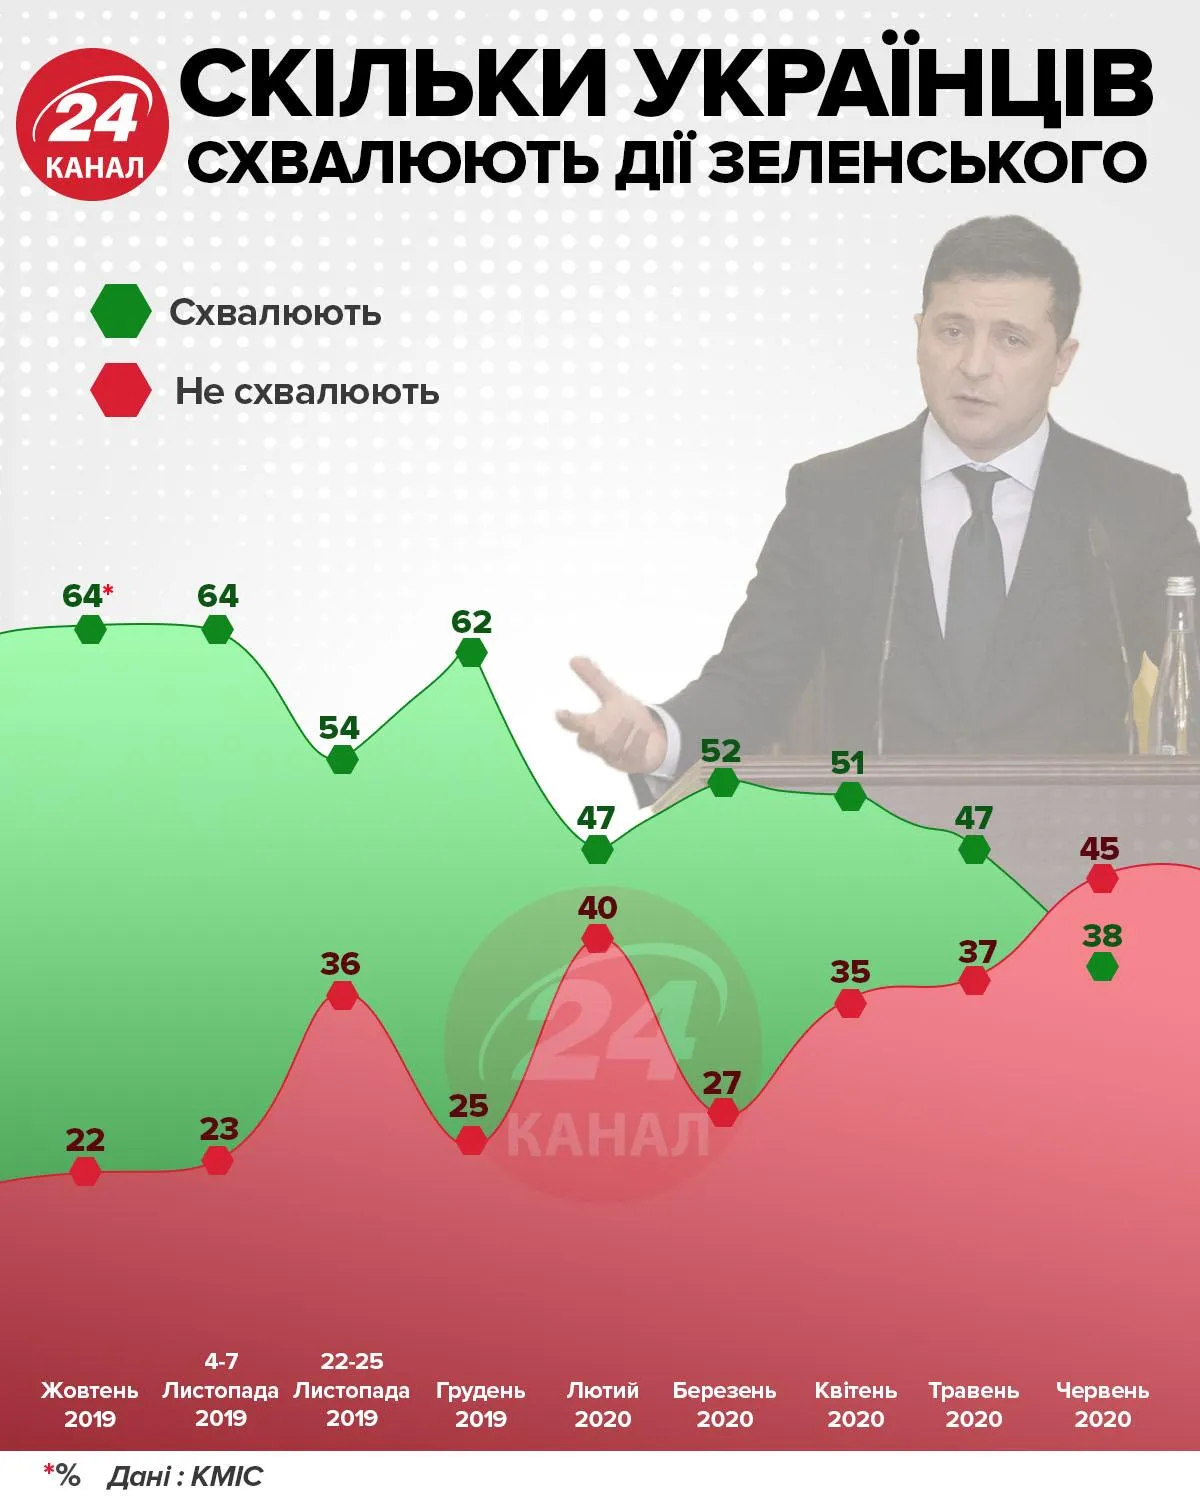 Сколько украинцев одобряют действия Зеленского инфографика 24 канала